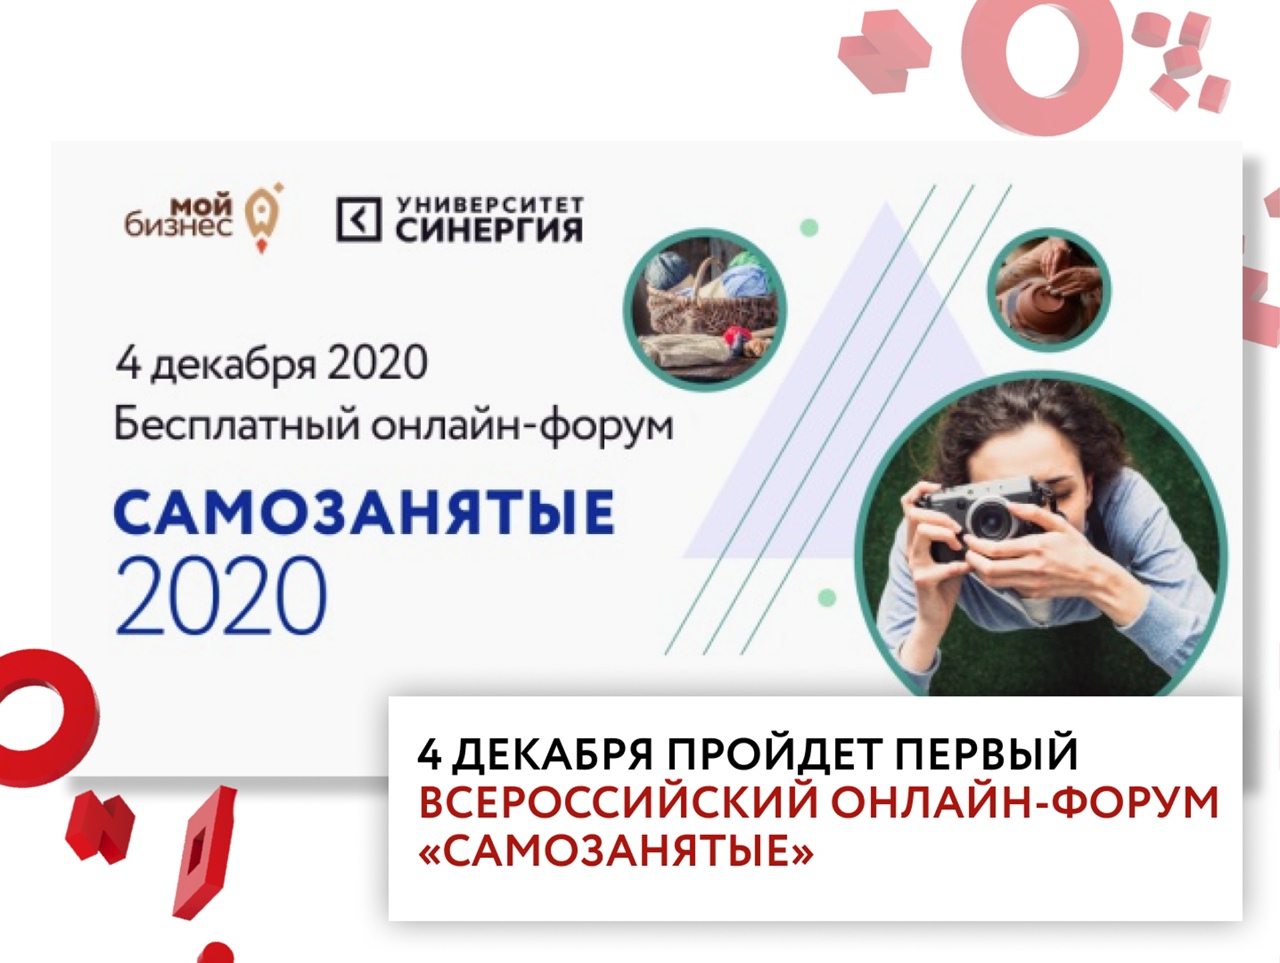 Всероссийский онлайн-форум для самозанятых пройдет 4 декабря